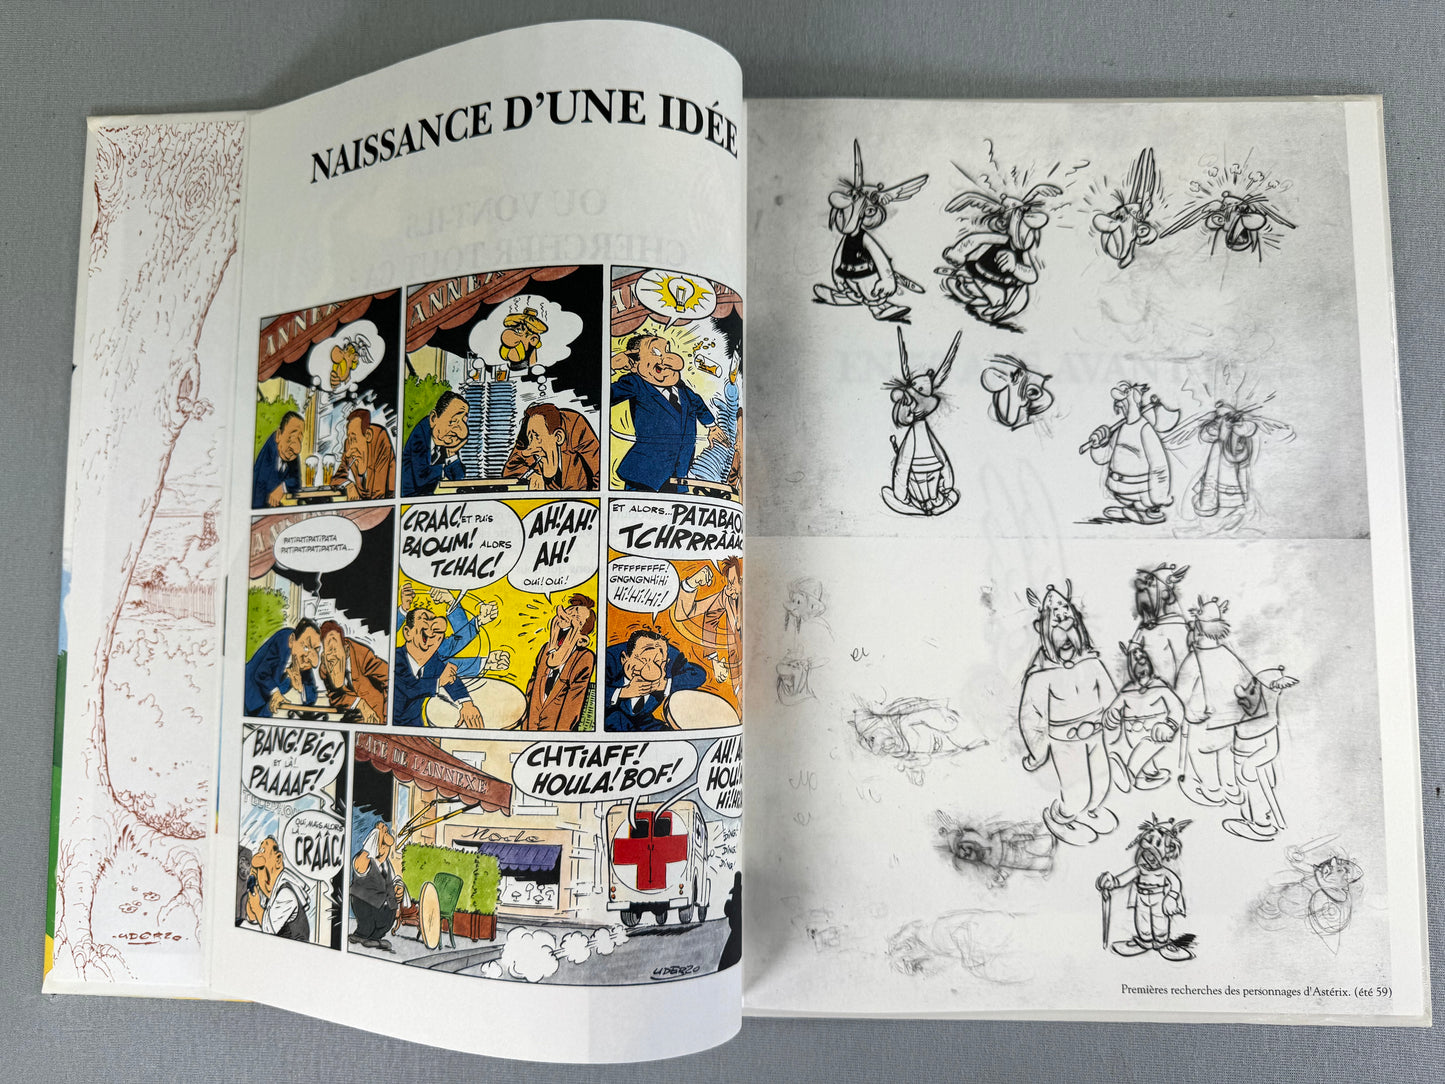 Asterix et la Rentrée Gauloise: Edns Rene 1993 1st Tirage Edition Rare HB EO